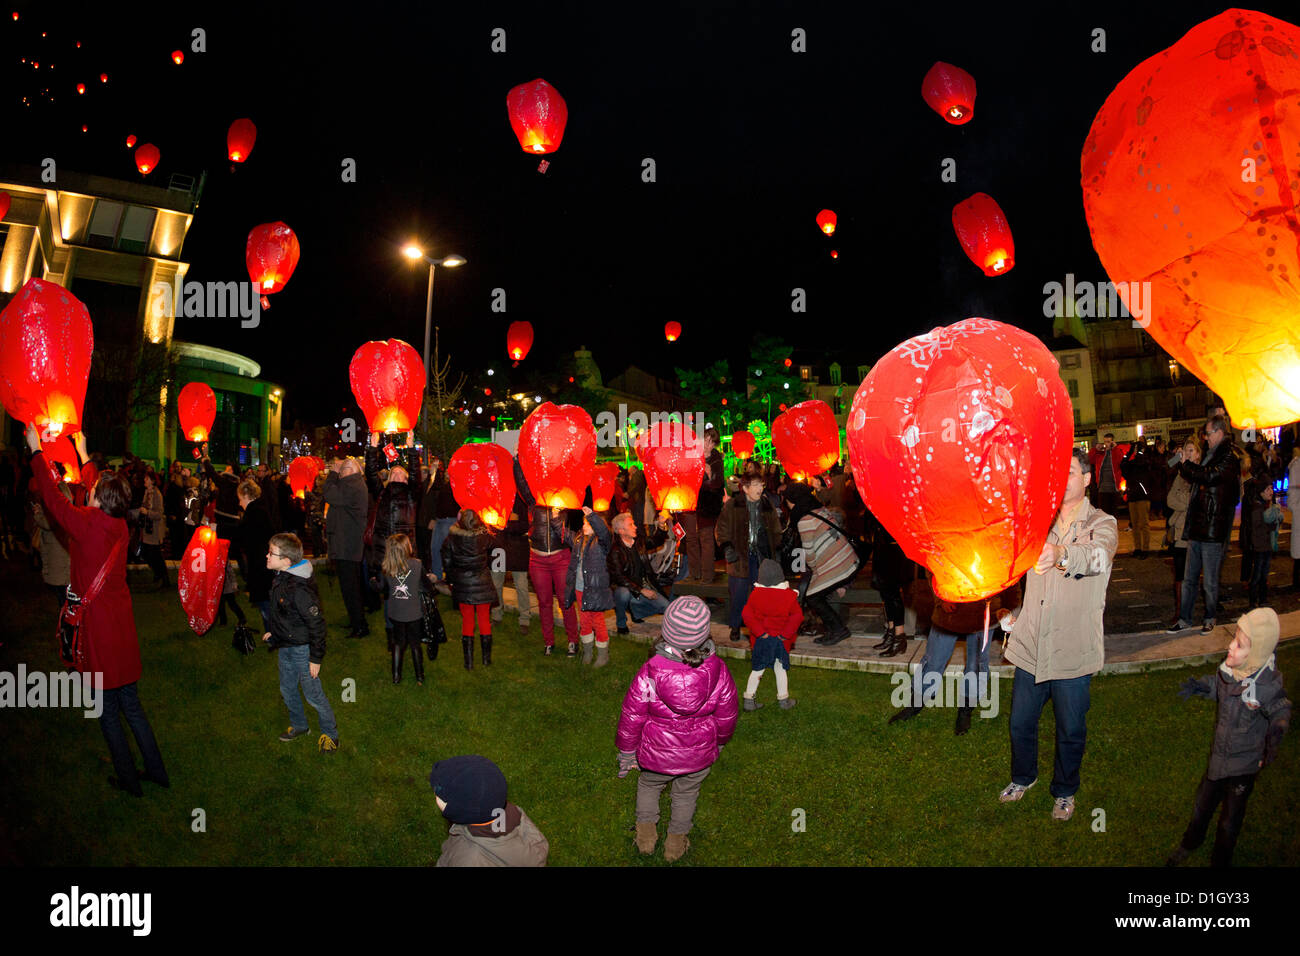 Une version de 1000 lanternes de vol en prenant les lettres de Noël (Vichy - France). Lanternes de ciel de nuit. Banque D'Images